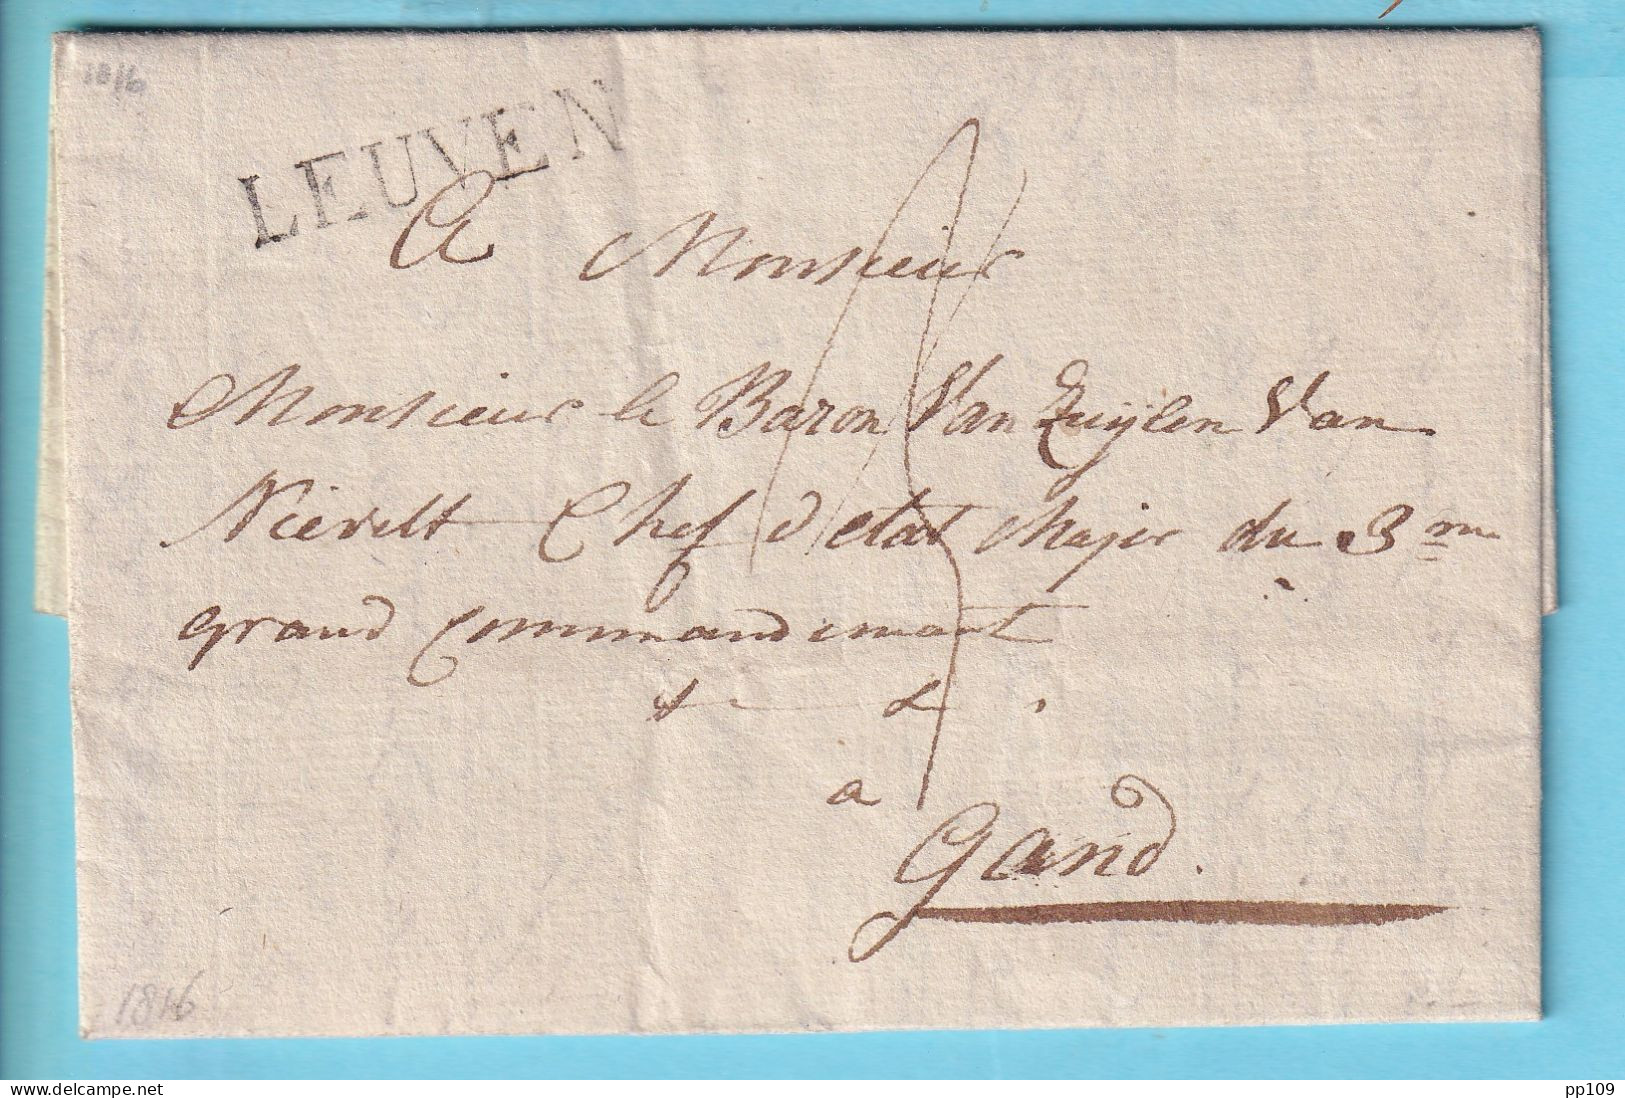 PRECURSEUR Avec Cont. 28 Mai 1816 De LEUVEN Vers GAND  - 1830-1849 (Belgique Indépendante)